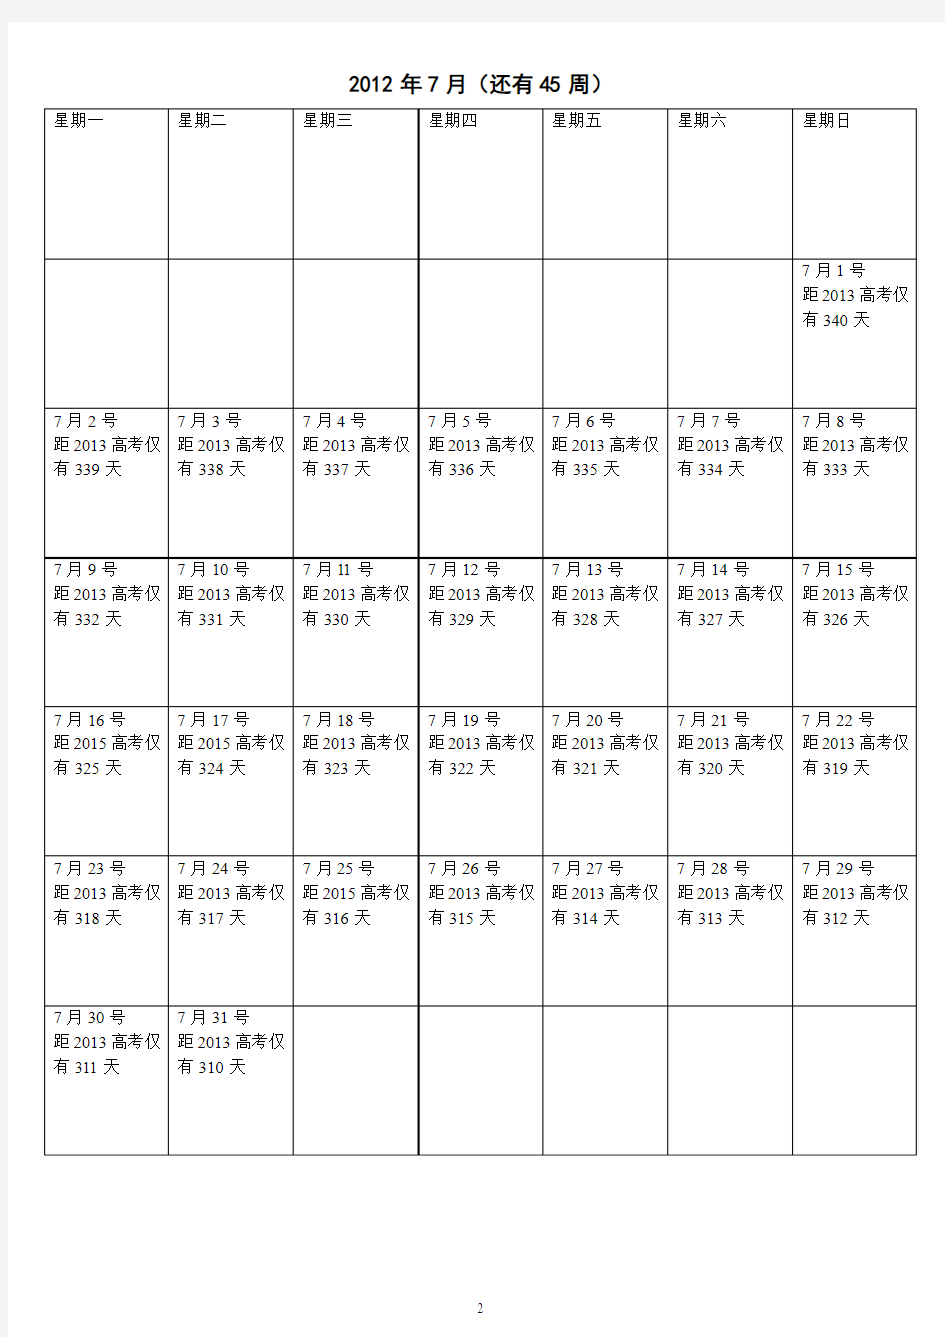 2013年高考倒计时日历(免费)